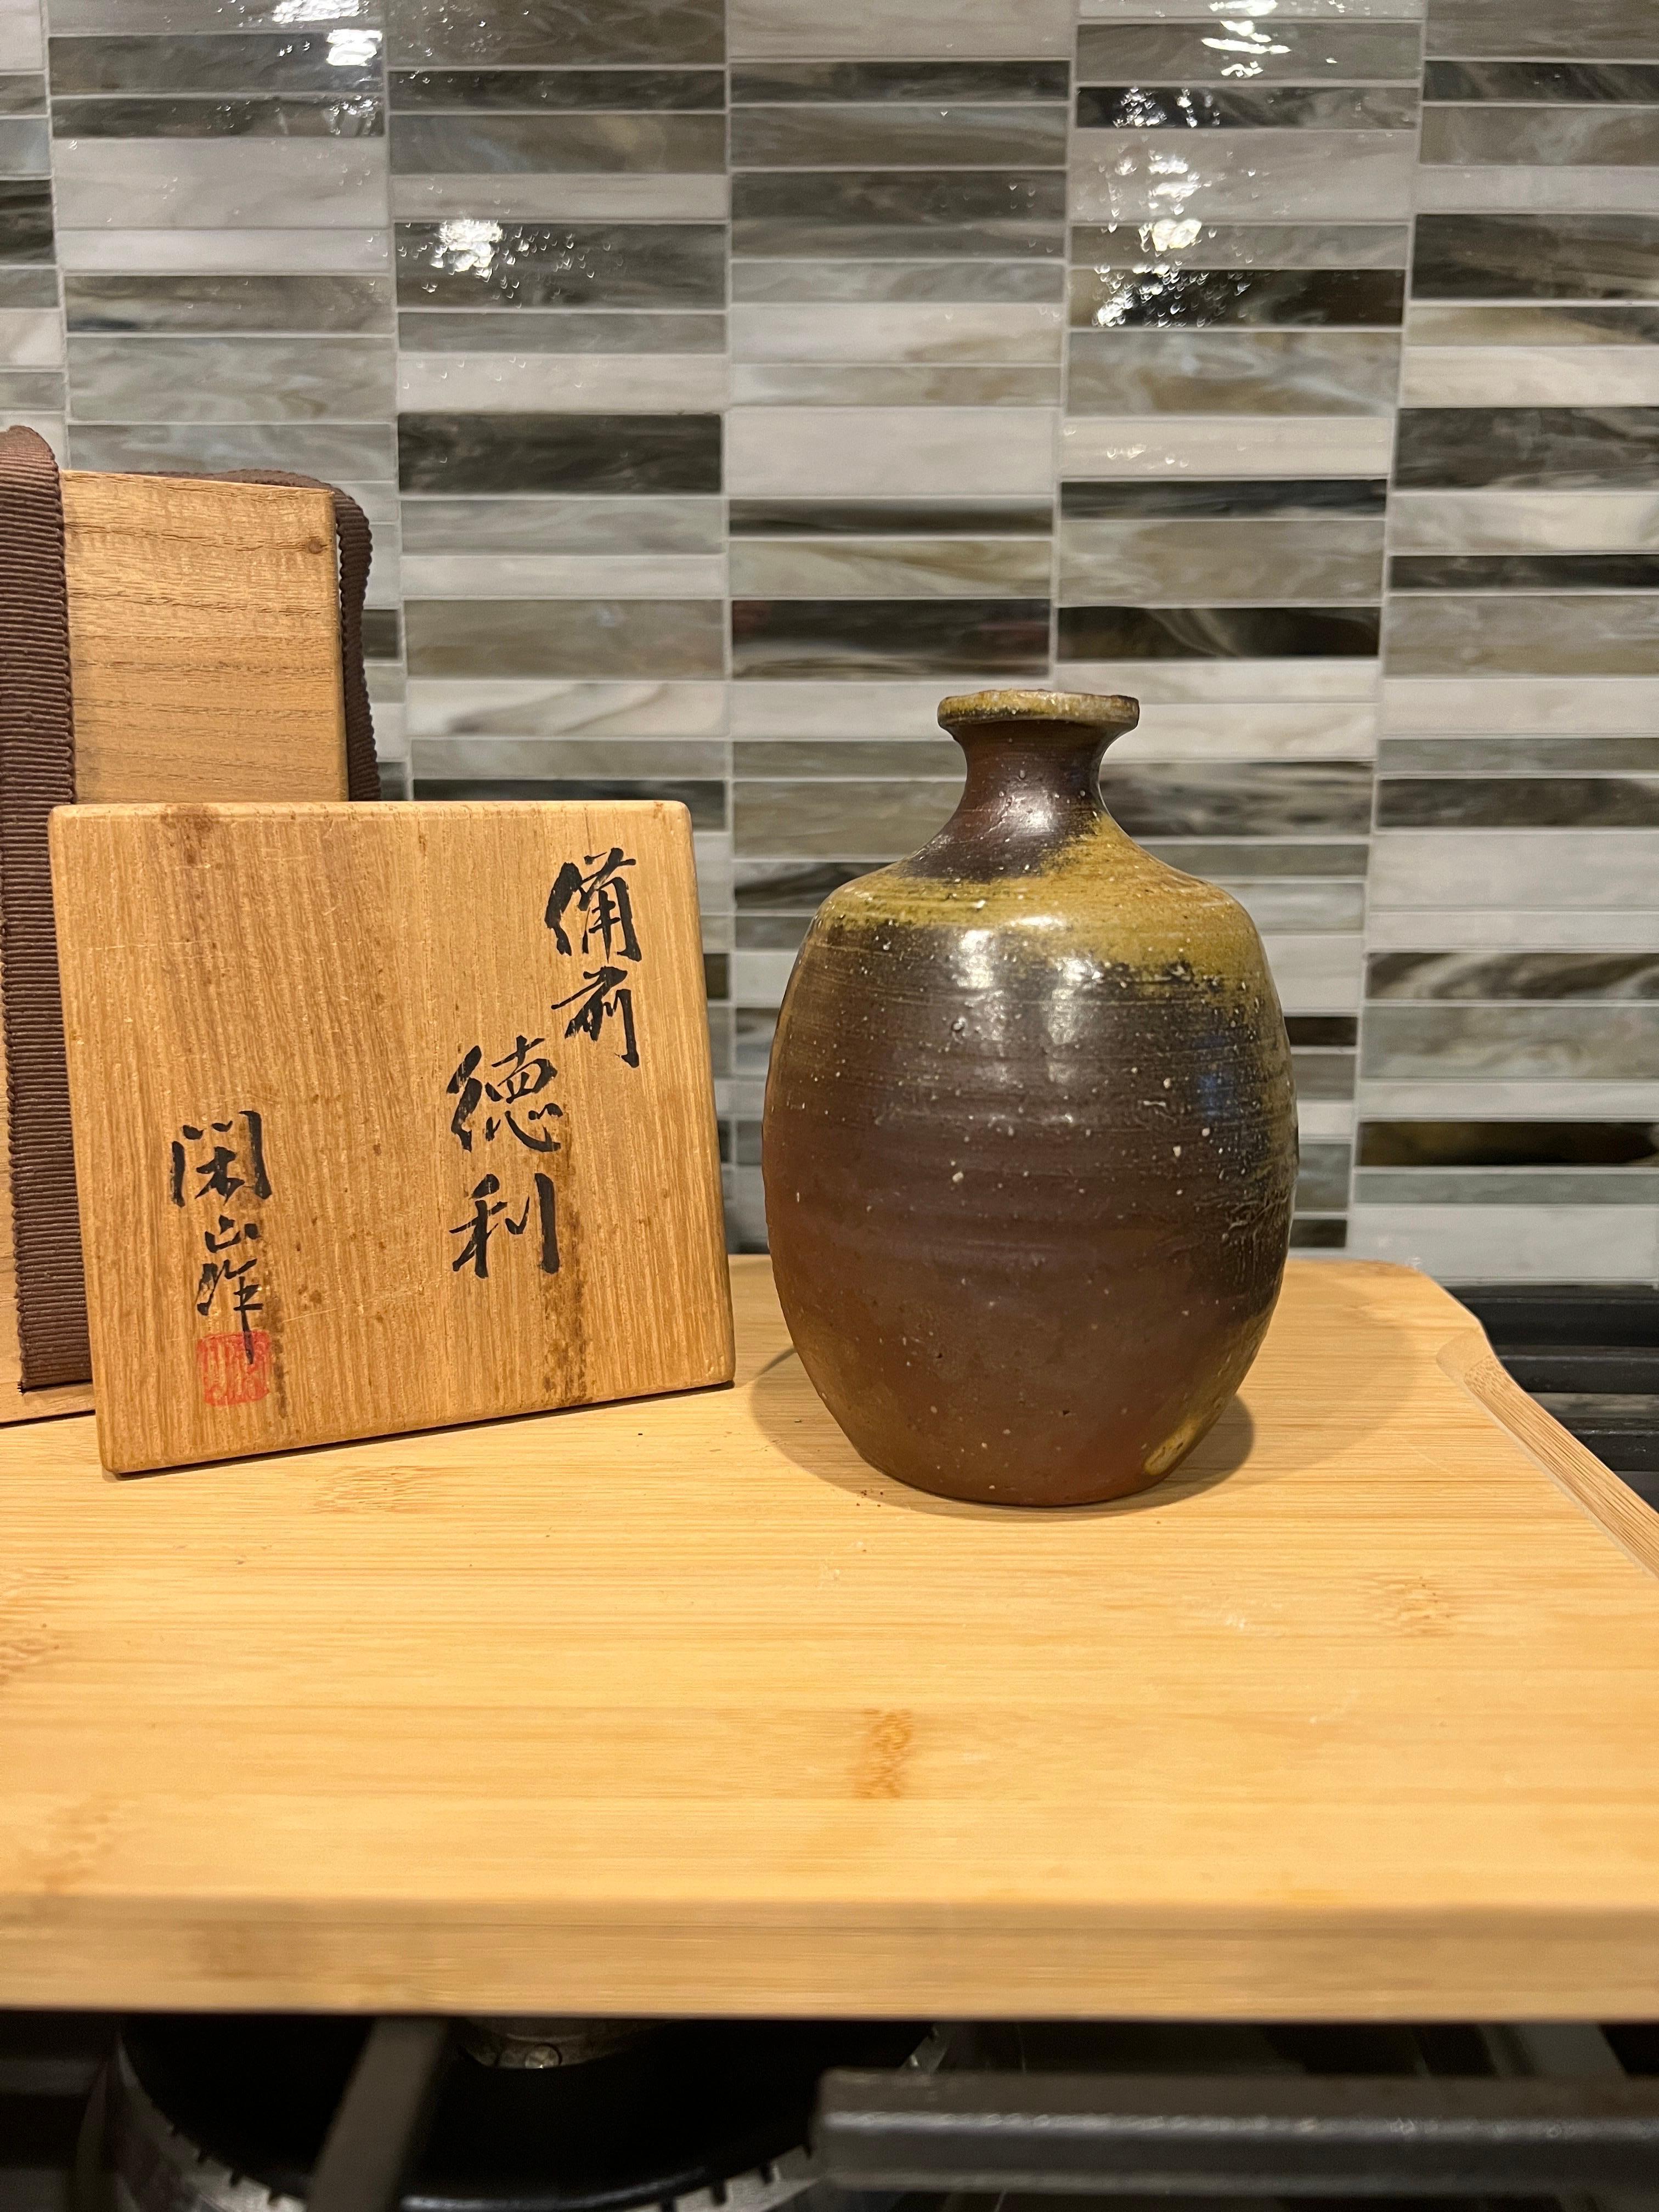 Familie Takatori (japanisch, 20. Jahrhundert).

Ein Bizen-Ware- oder Bizen-Yaki-Keramikgefäß, das in der Region Okayama in Japan hergestellt wird. Untergebracht in der Original-Holzbox. 

Gefäß misst: 5.25